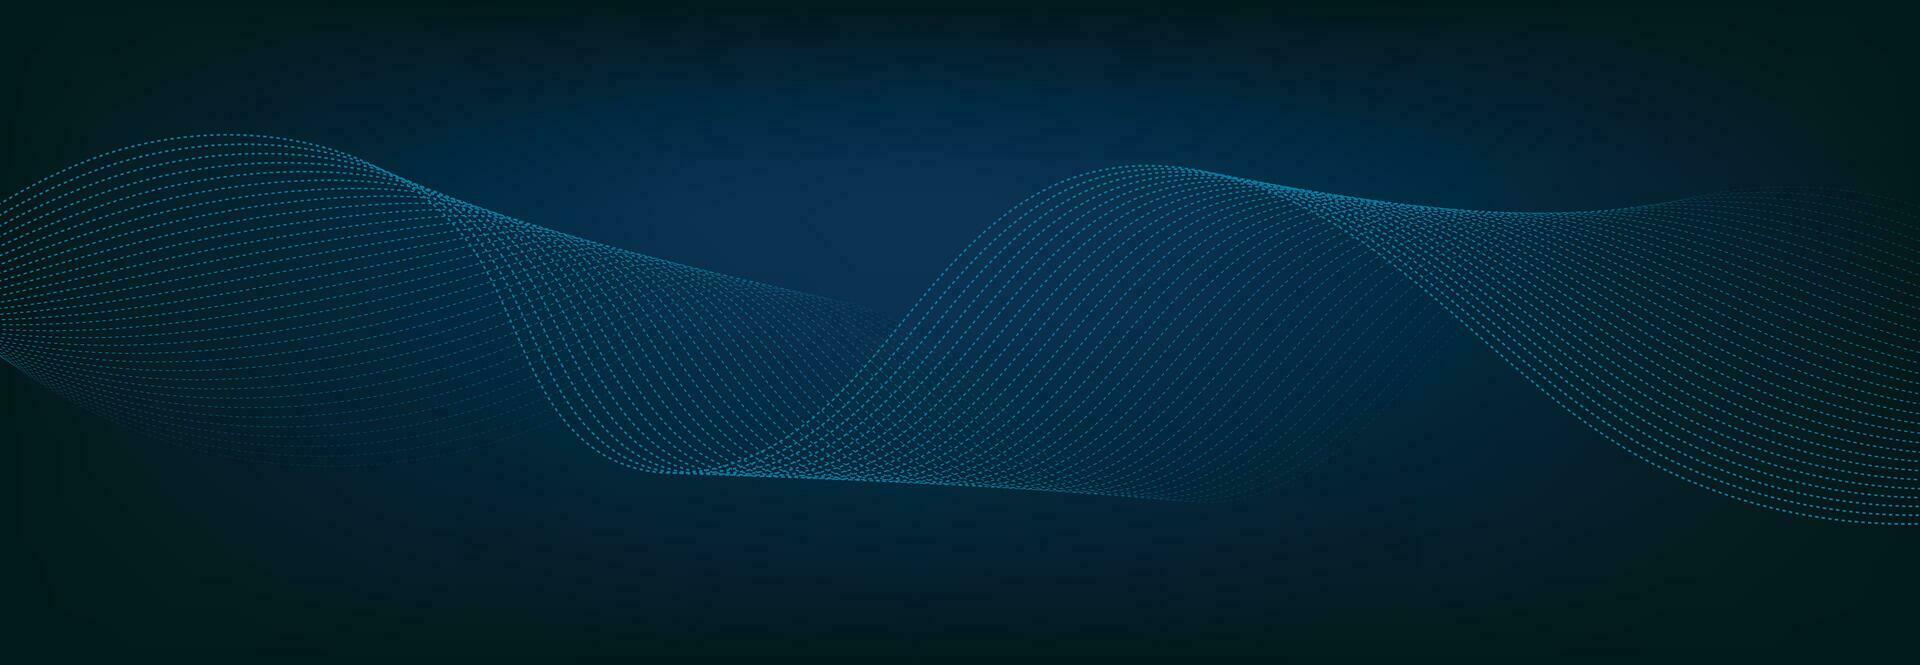 abstract banier sjabloon met blauw golvend lijnen. technologie spandoek. vector